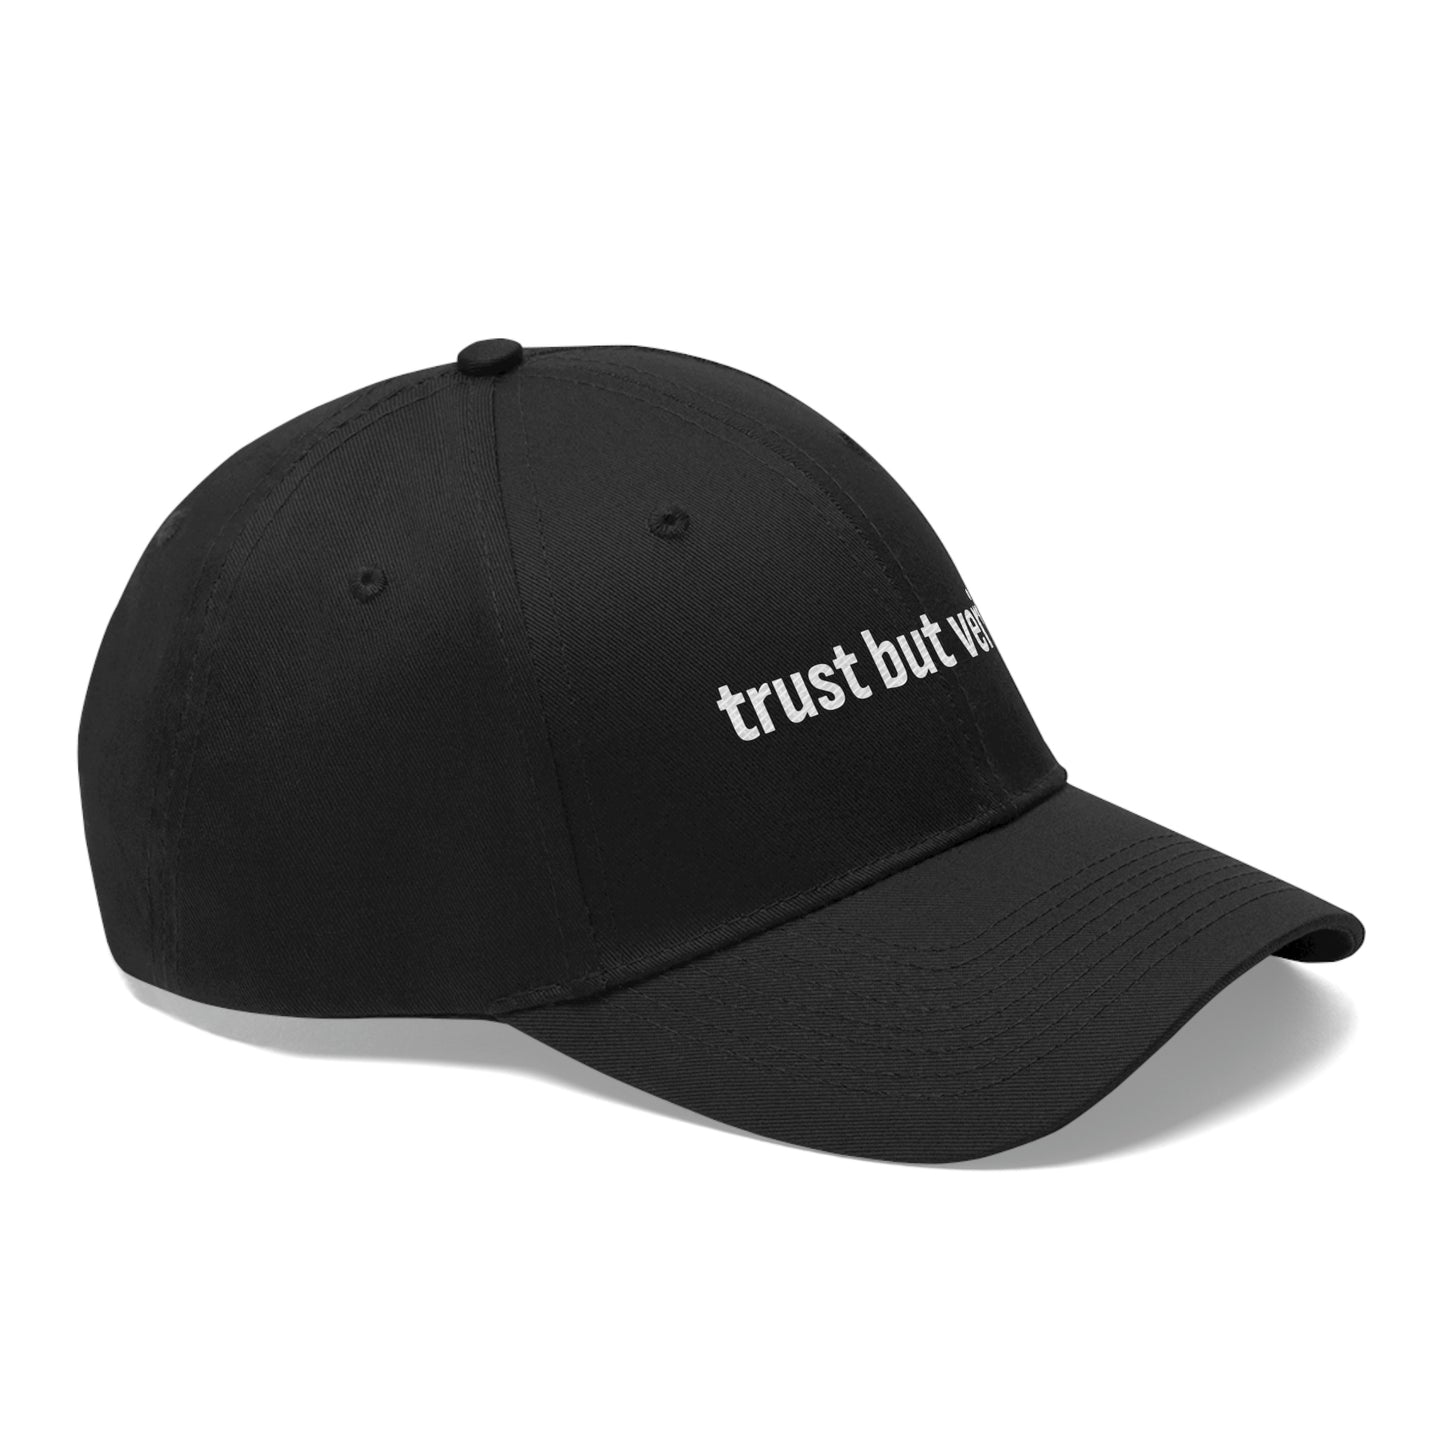 Trust But Verify Twill Hat